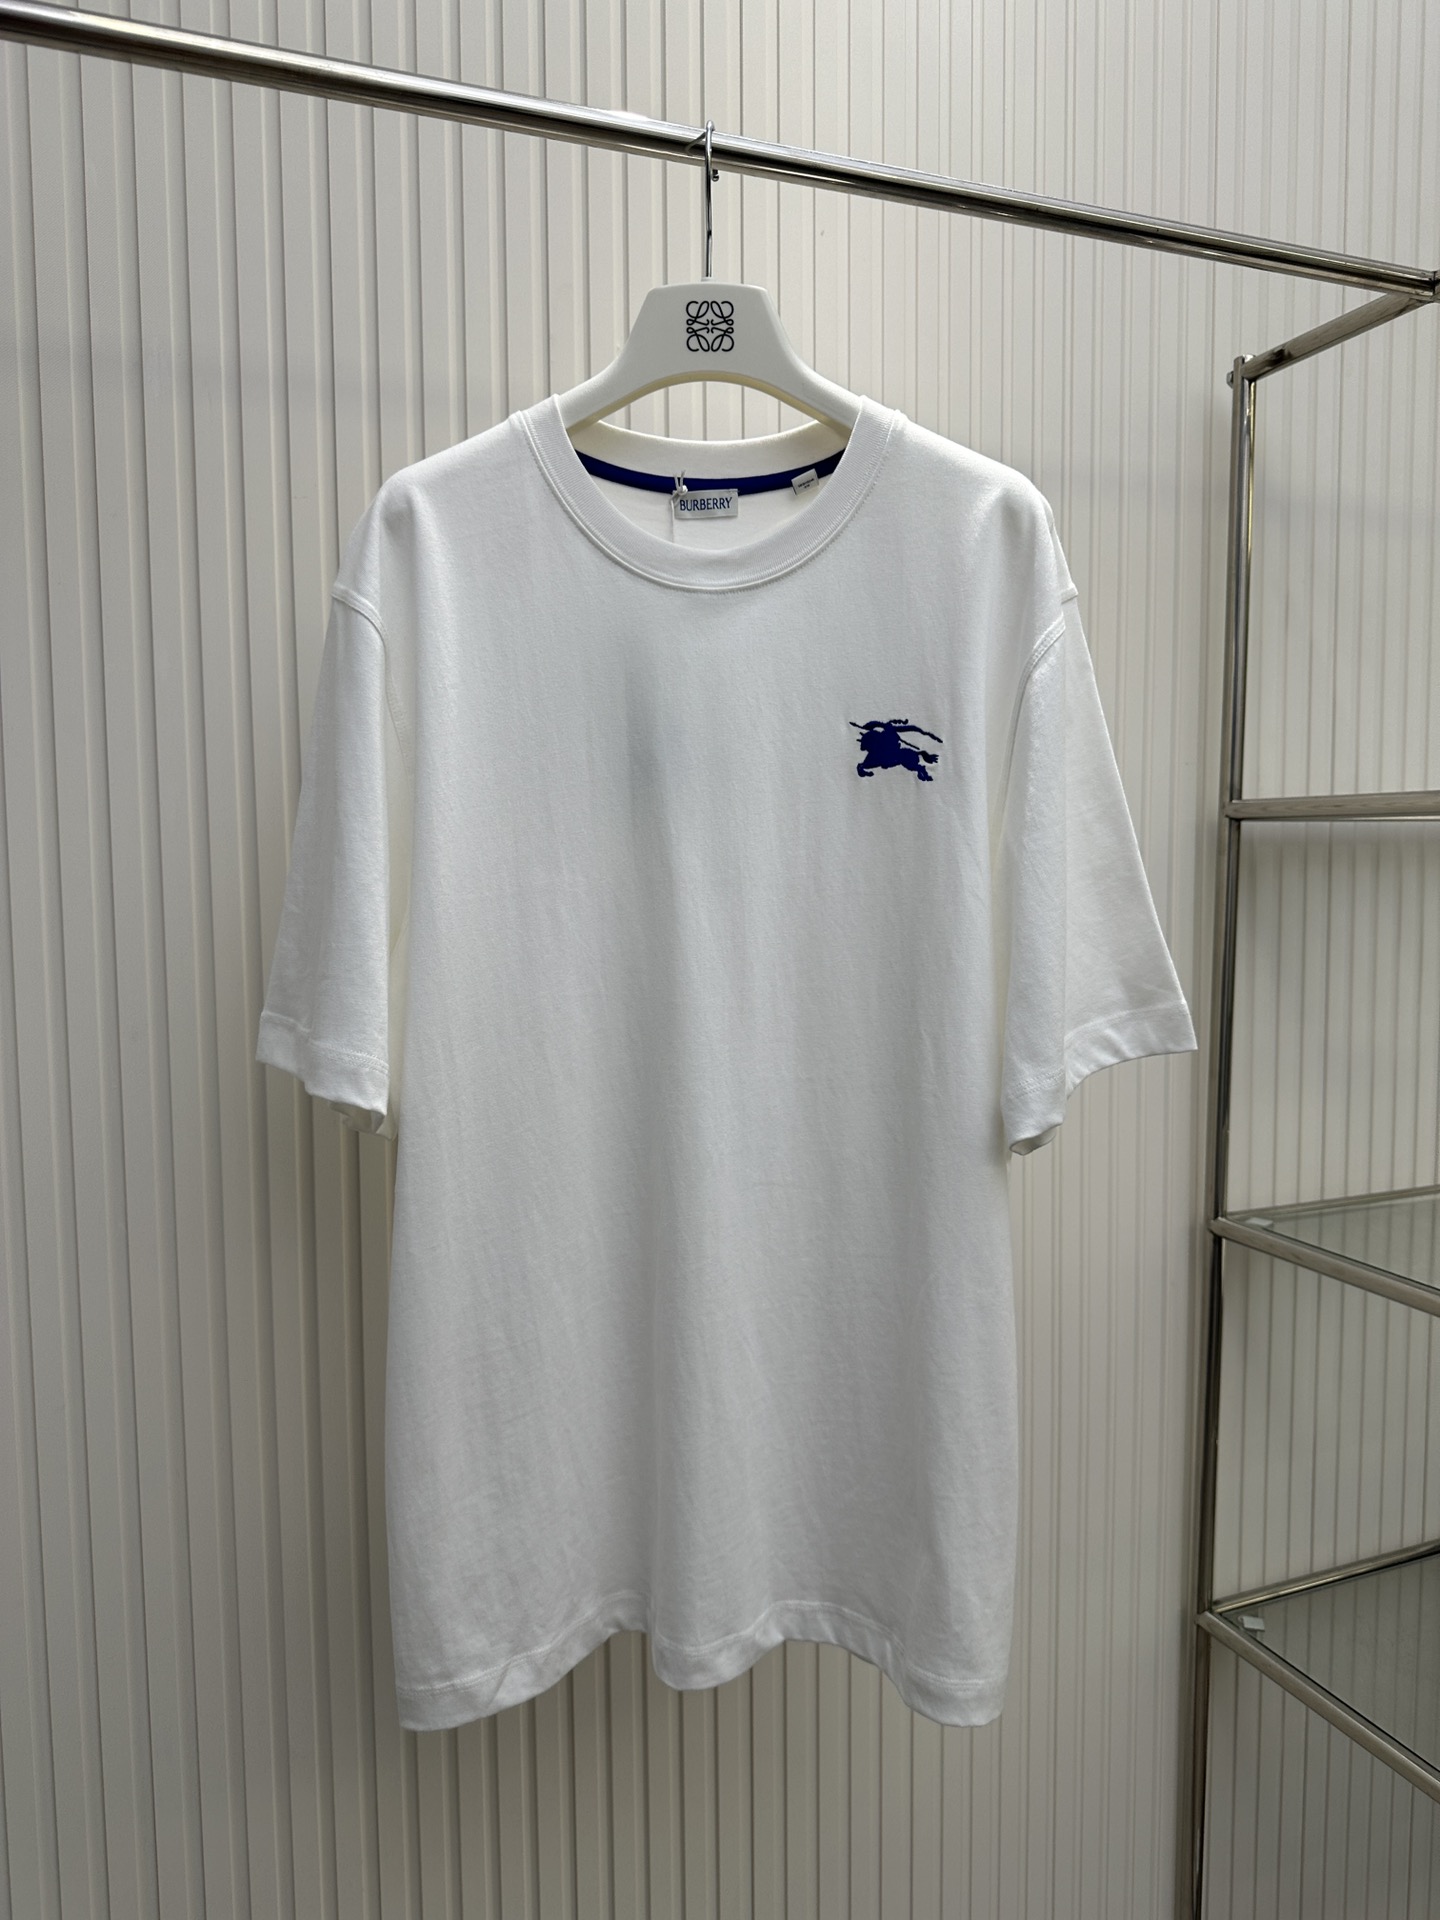 Top Quality Designer Replica
 Burberry Clothing T-Shirt Short Sleeve